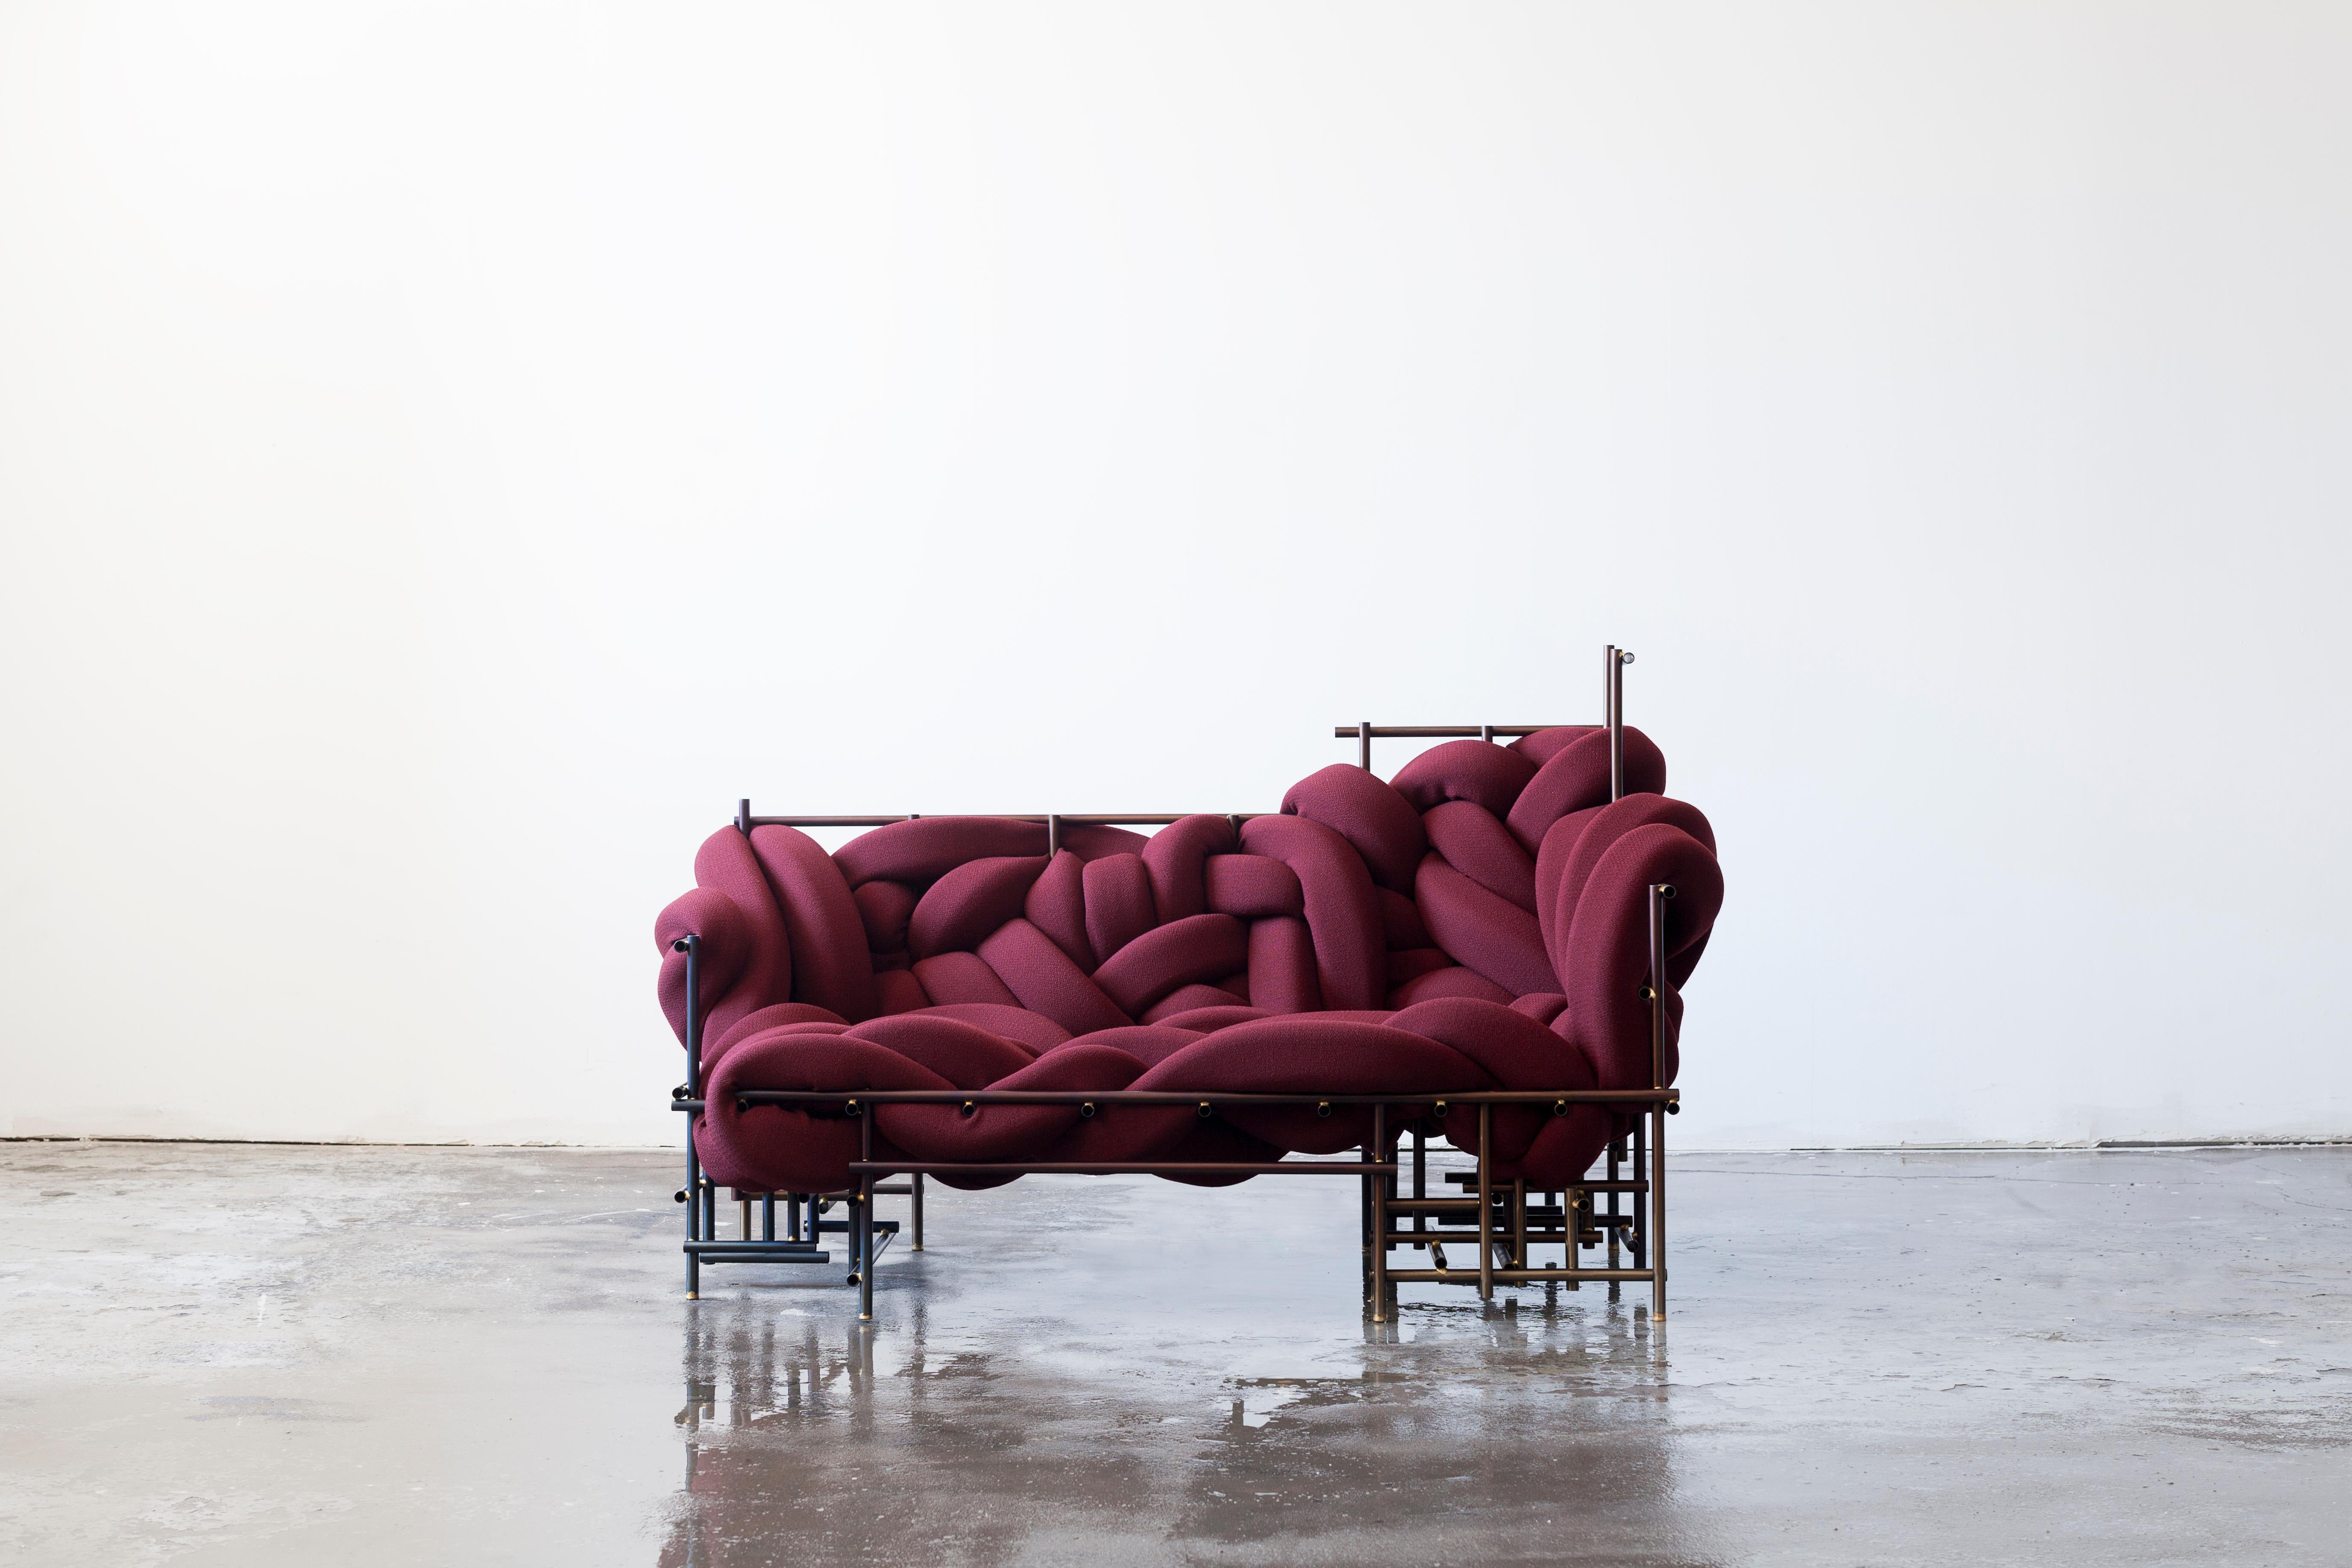 Gesetzloses Sofa von Evan Fay
Jede ist ein handgeformtes Unikat 
Abmessungen:
B 1676, T 863, H 1016 mm
B 66